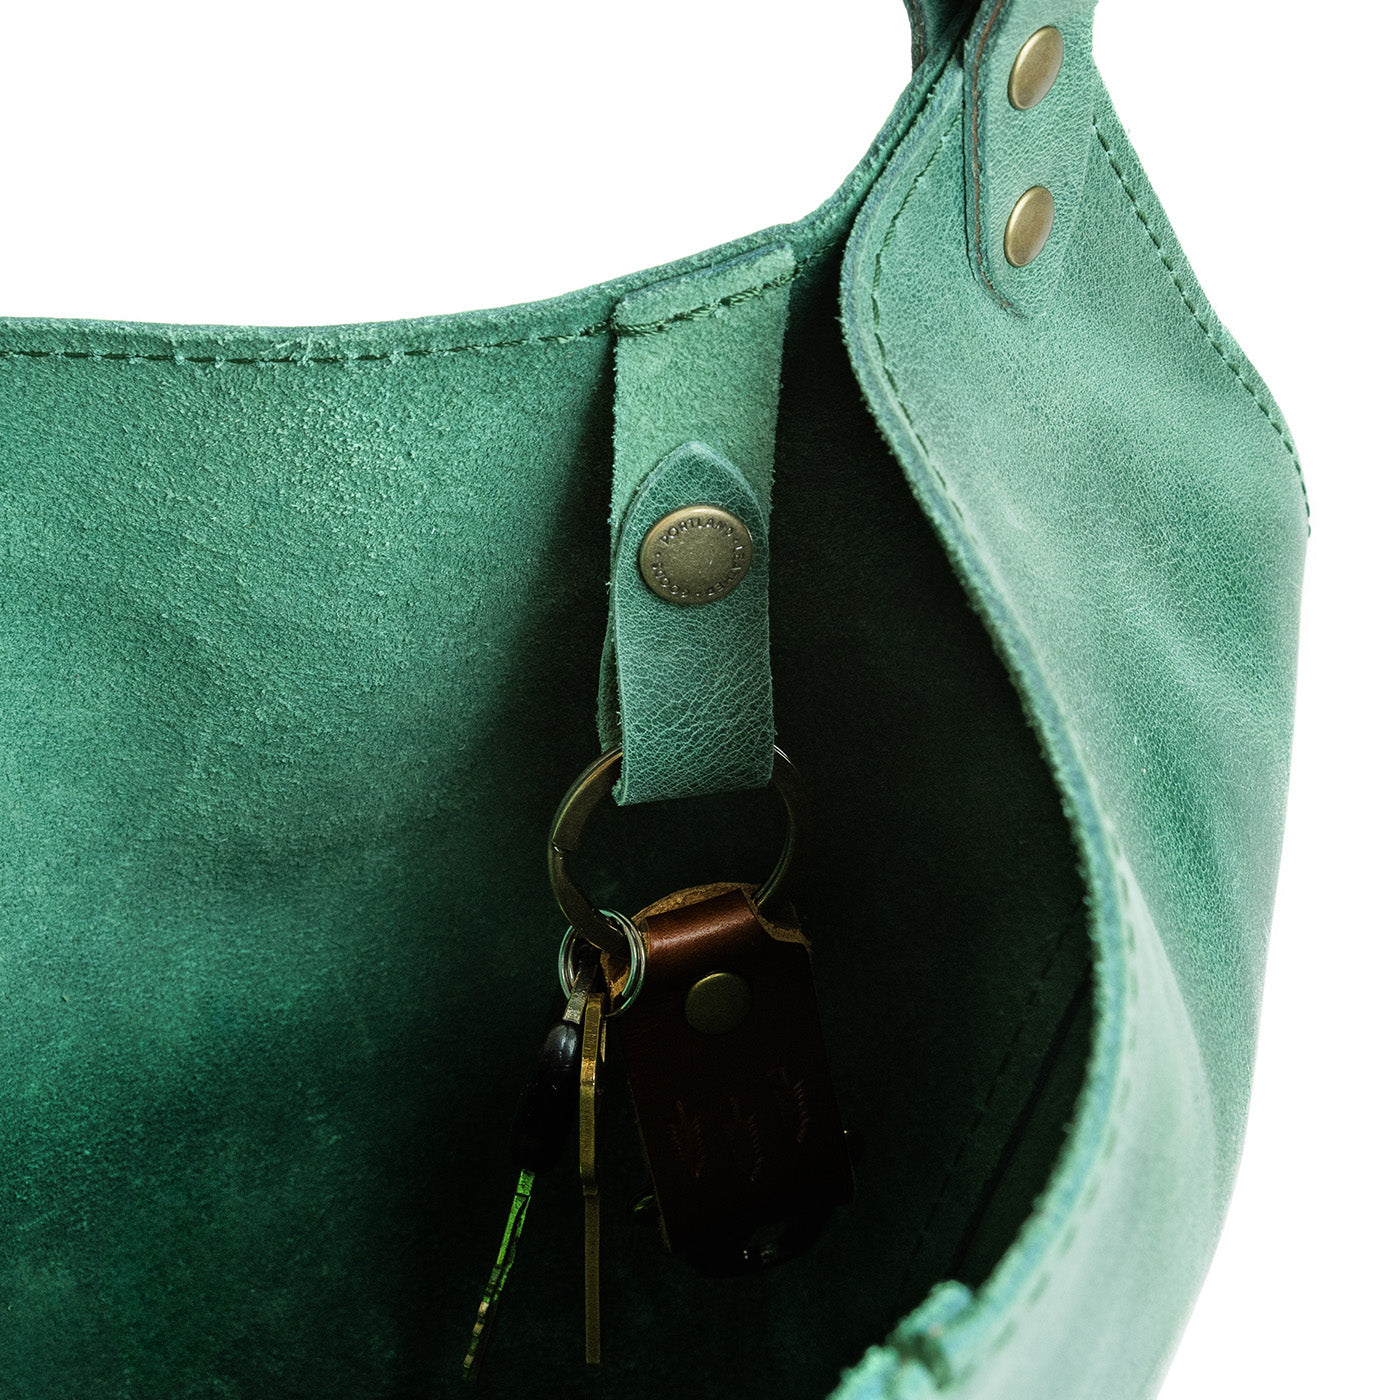 Surf | Structured bucket shaped handbag with an adjustable shoulder strap